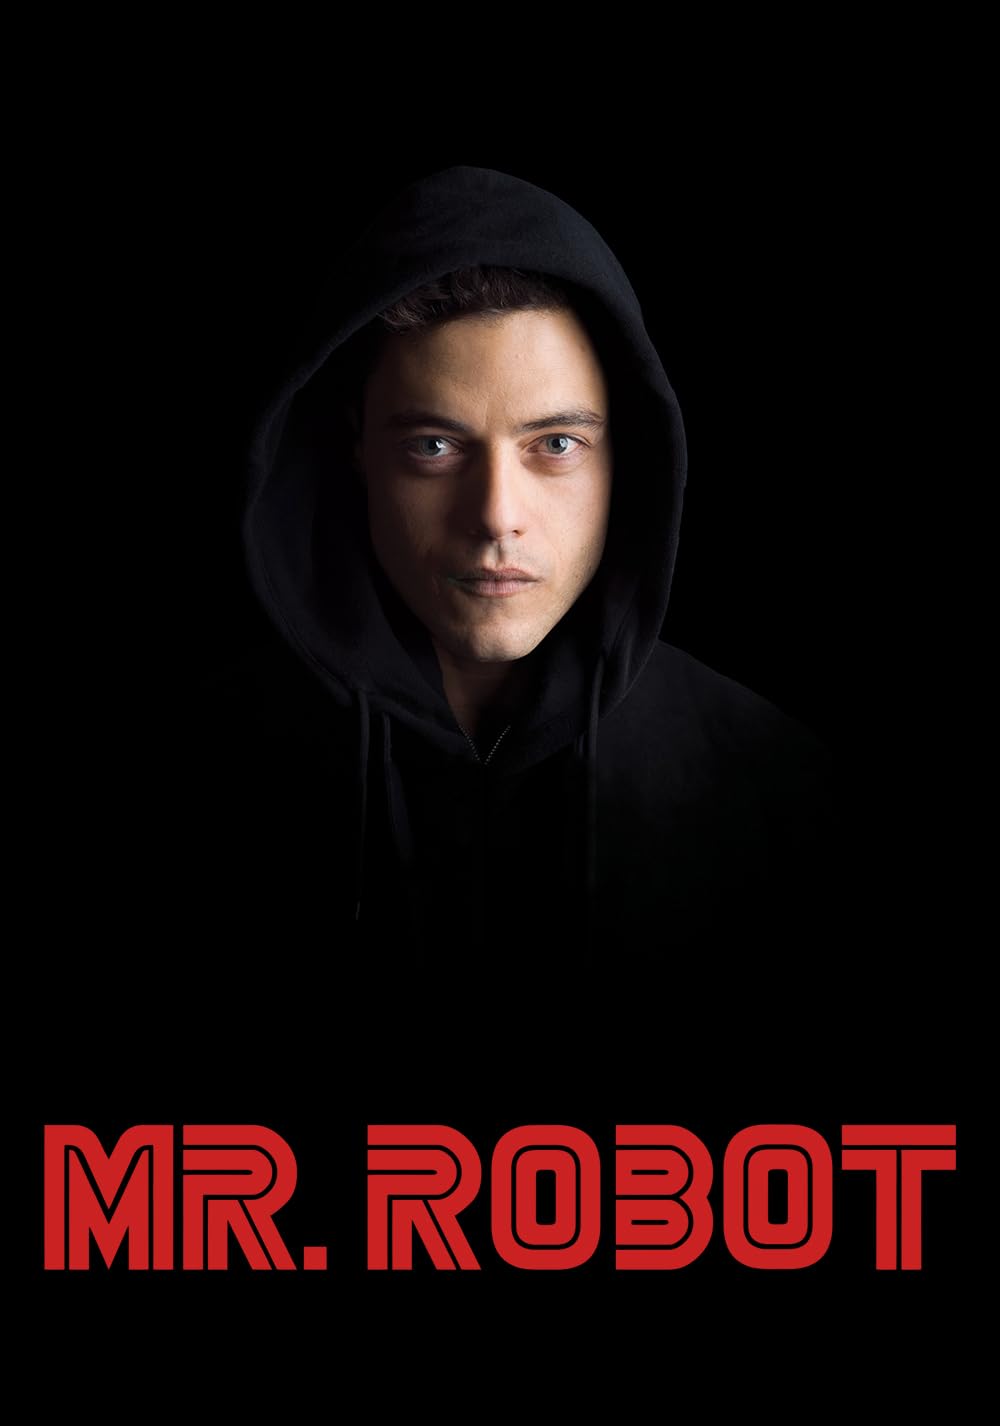 سریال مستر ربات (Mr. Robot 2015) | دانلود و تماشای آنلاین